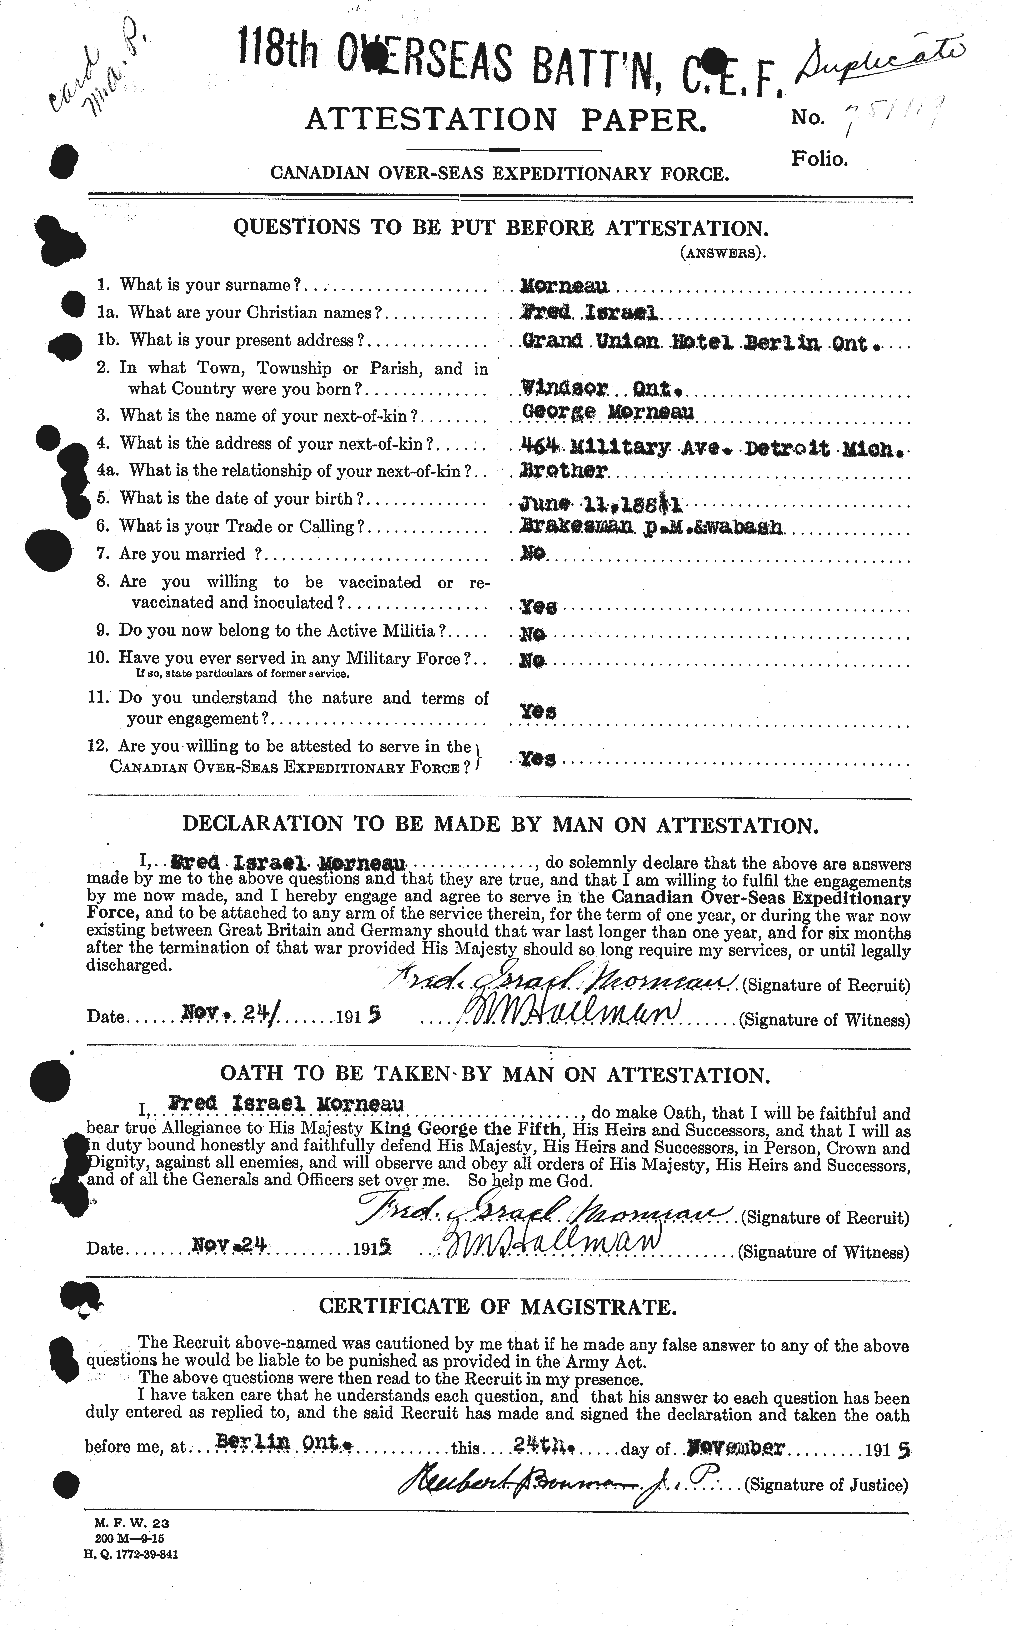 Dossiers du Personnel de la Première Guerre mondiale - CEC 510756a